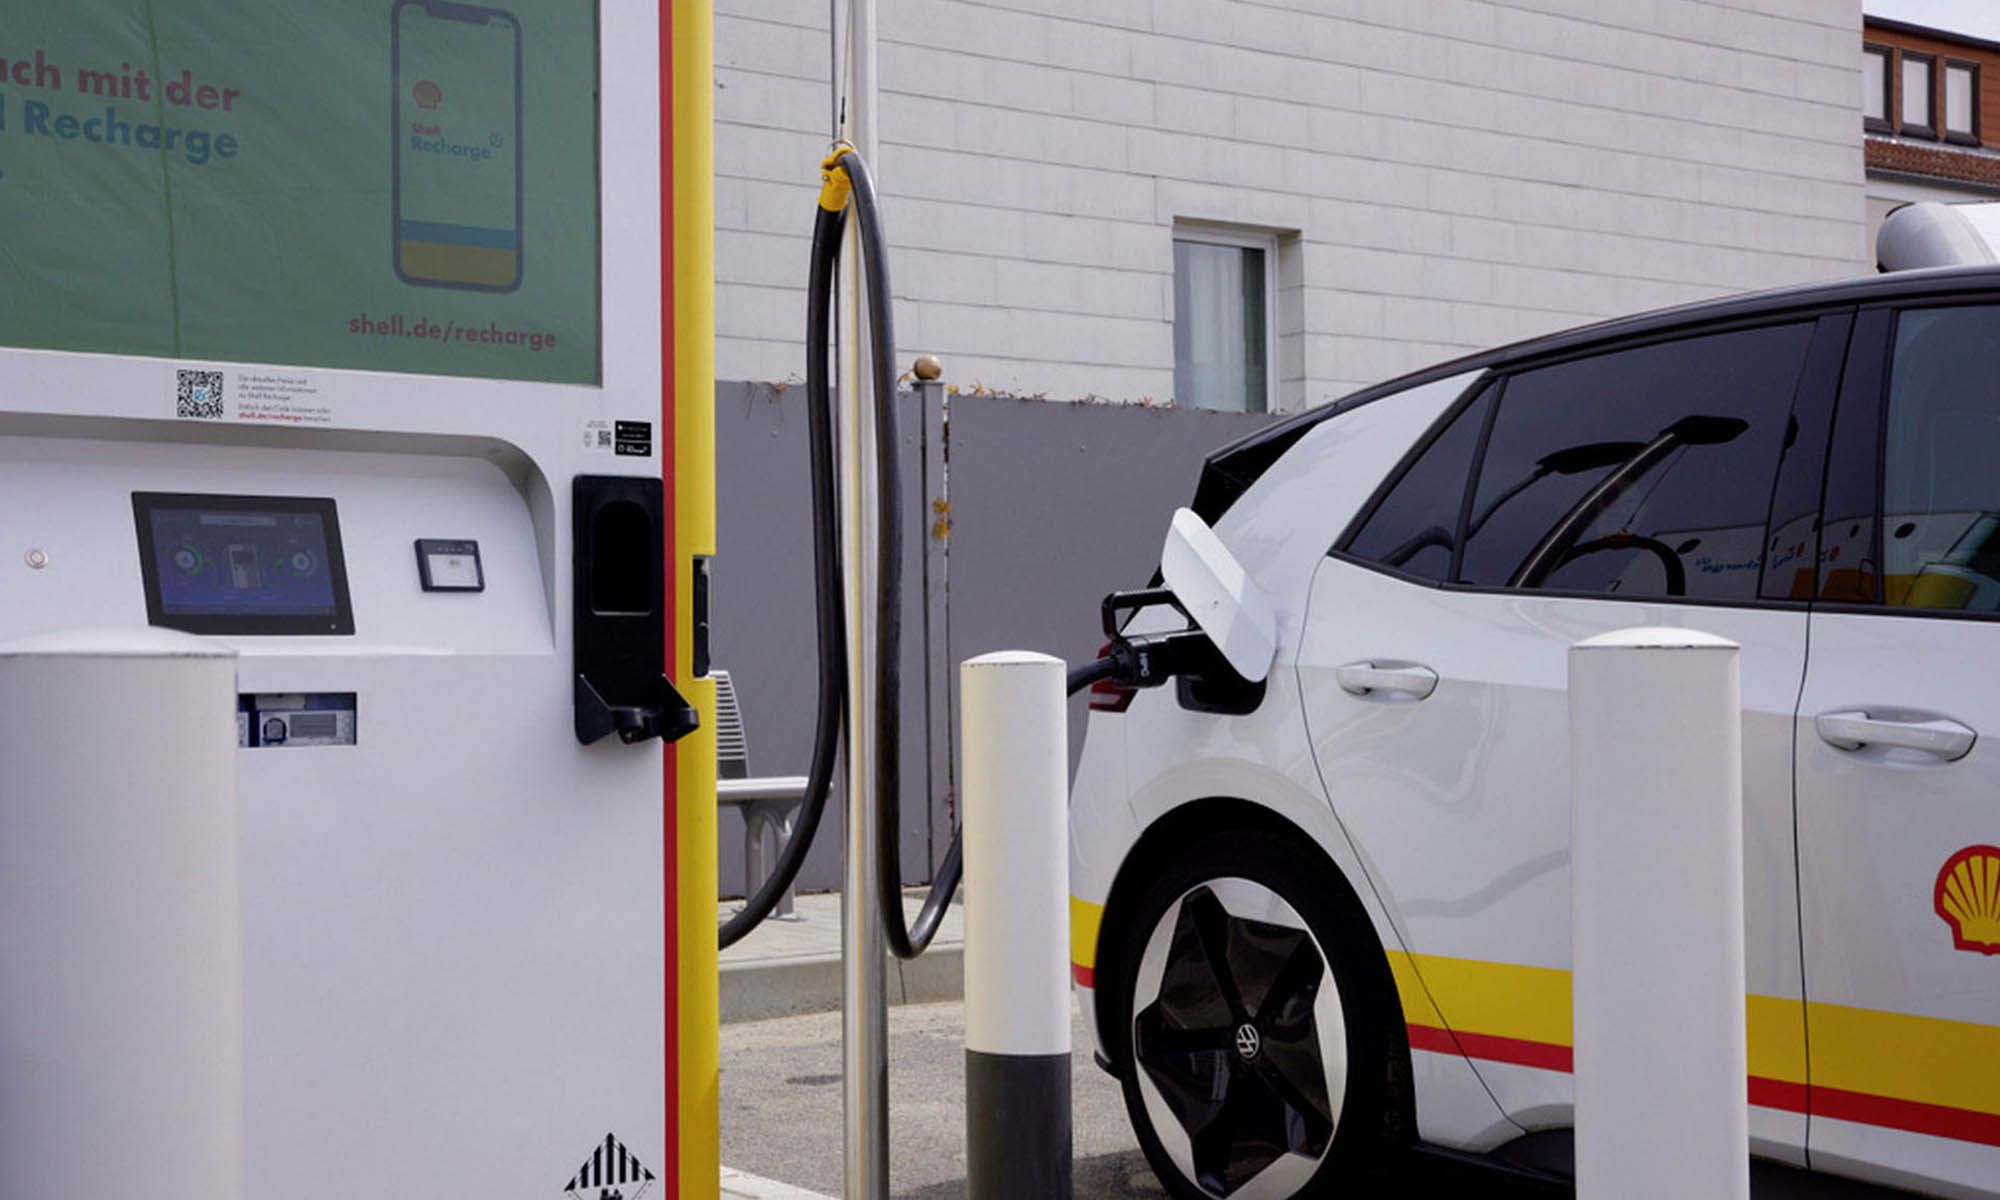 Los nuevos puntos de recarga rápida de Volkswagen y Shell ayudarán a expandir la red en toda Europa.